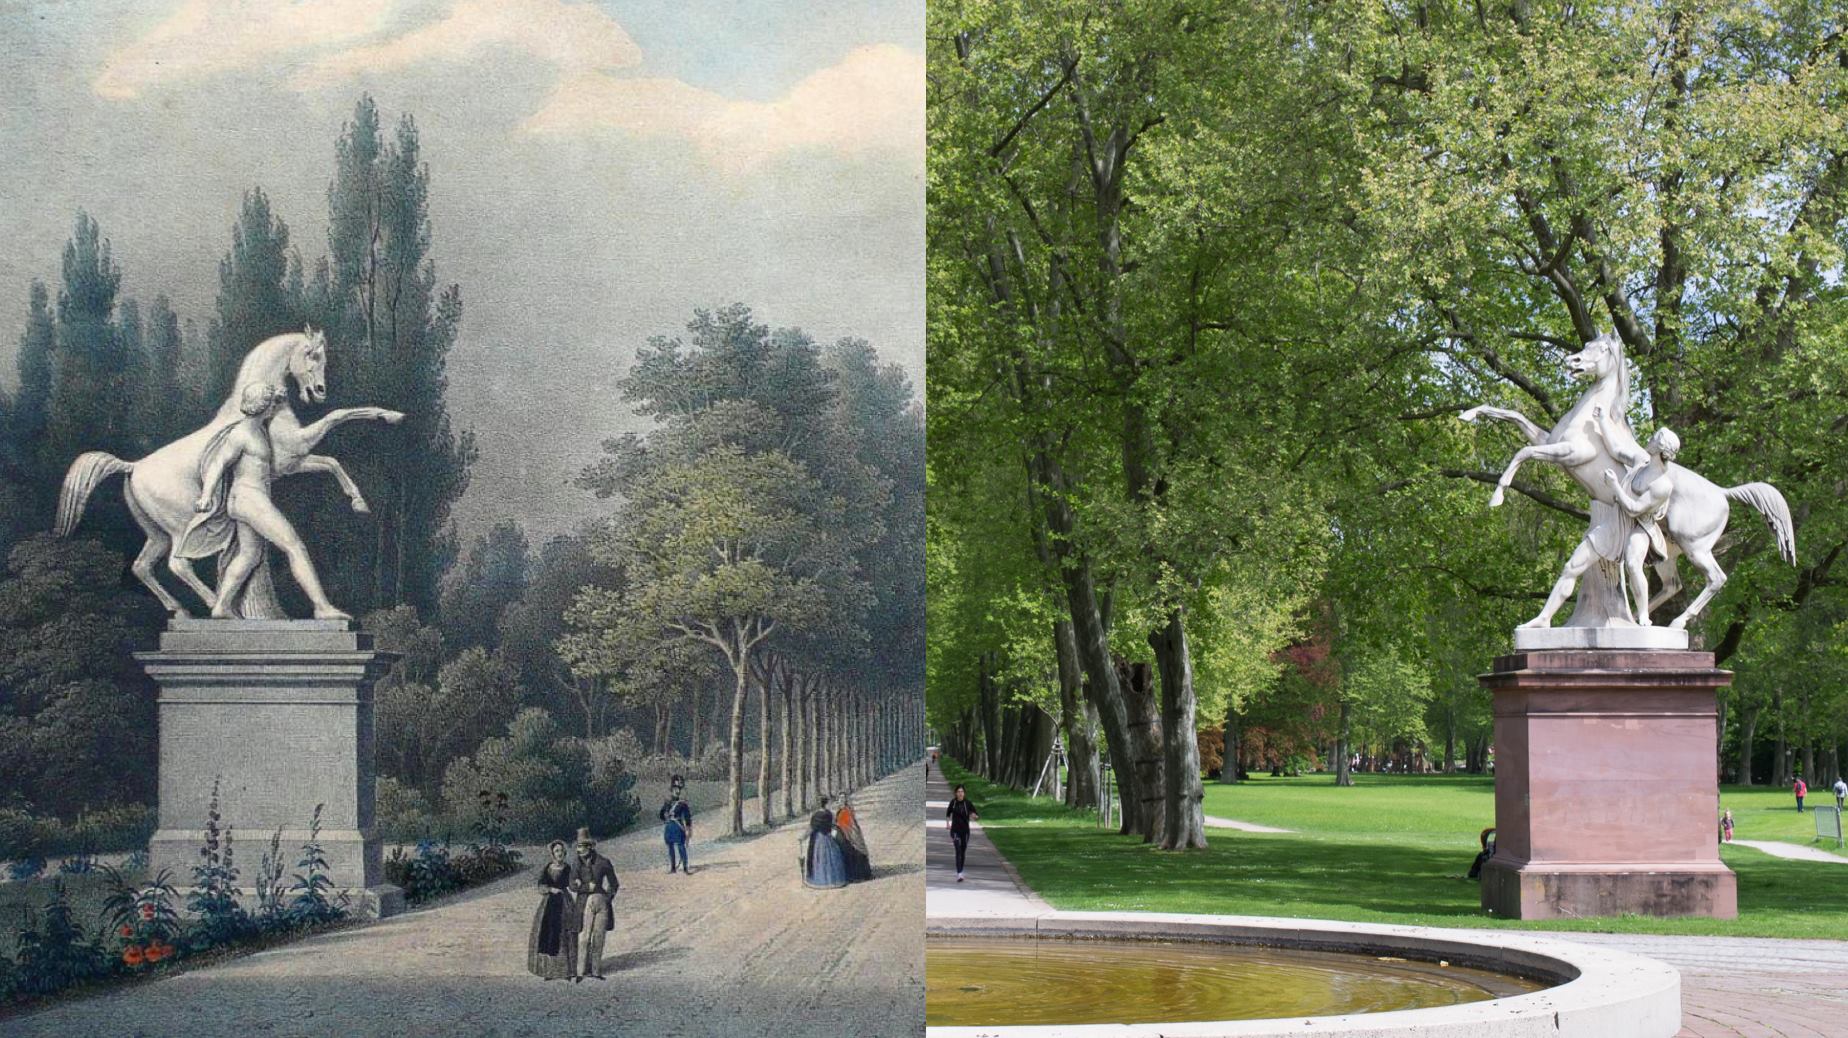 Rossebändiger von Ludwig Hofer am Beginn der Platanenallee 1850 und heute